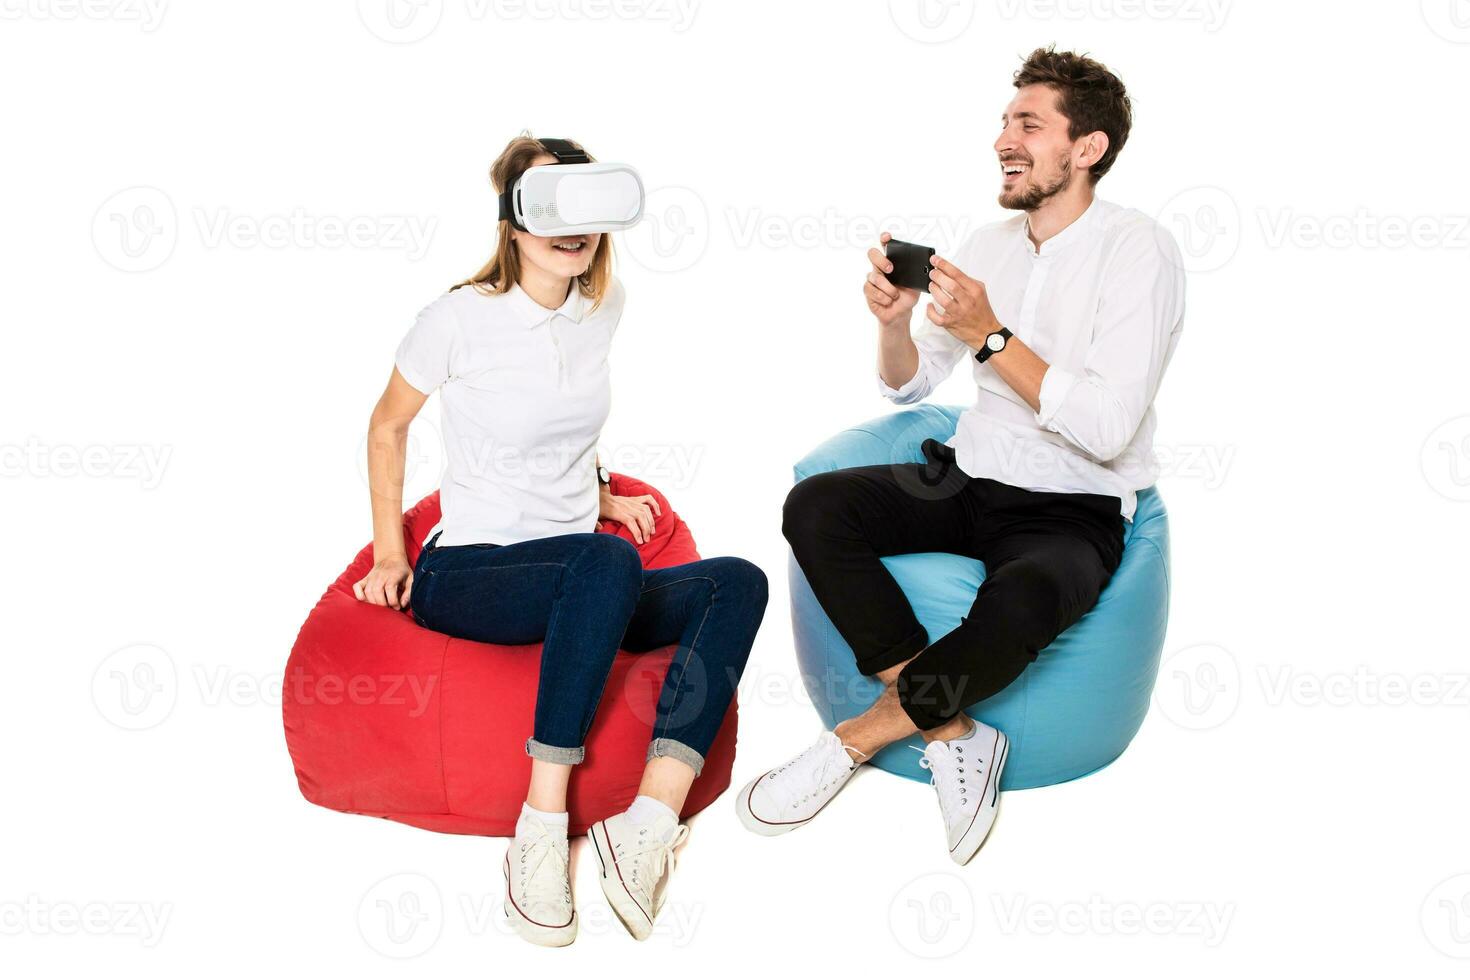 leende vänner upplever virtuell verklighet glasögon sittande på Bönpåsar isolerat på vit bakgrund. foto